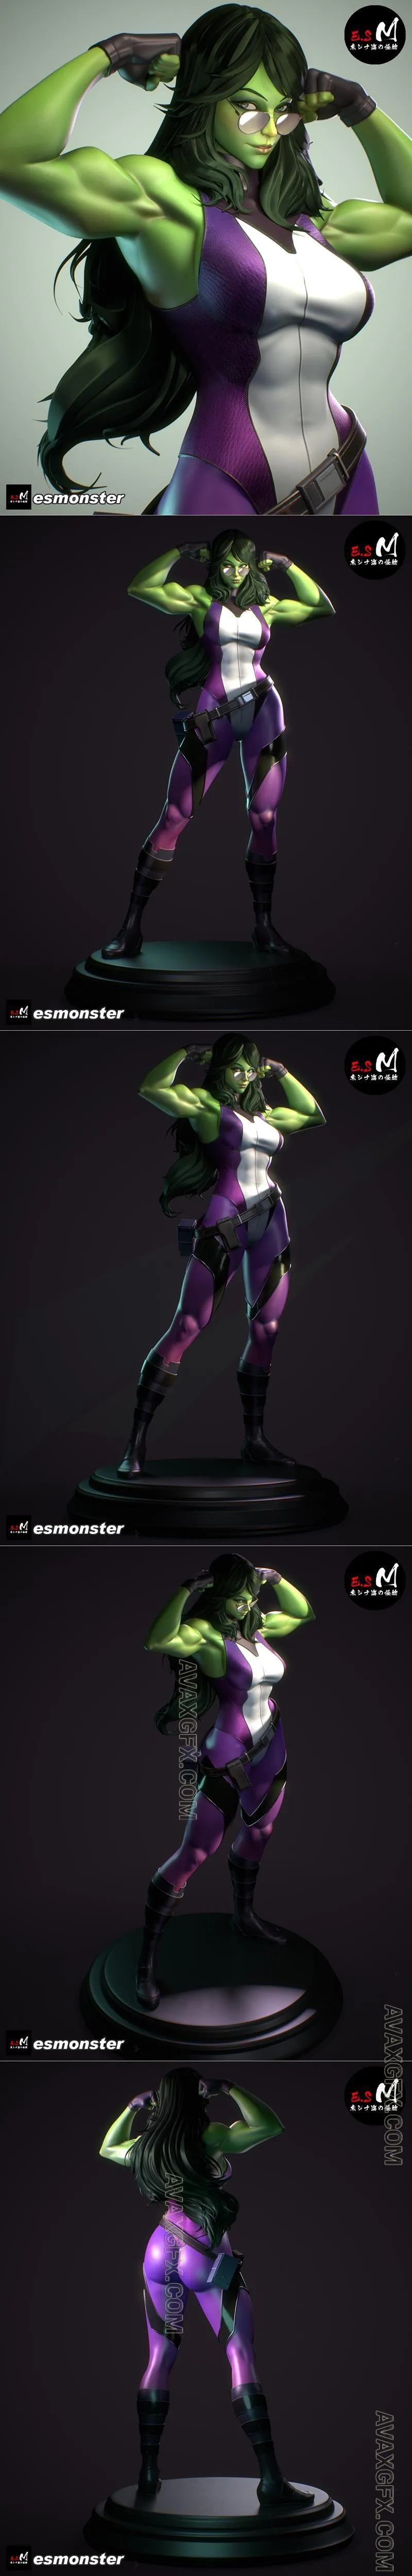 E.S Monster - She-Hulk Marvel - STL 3D Model